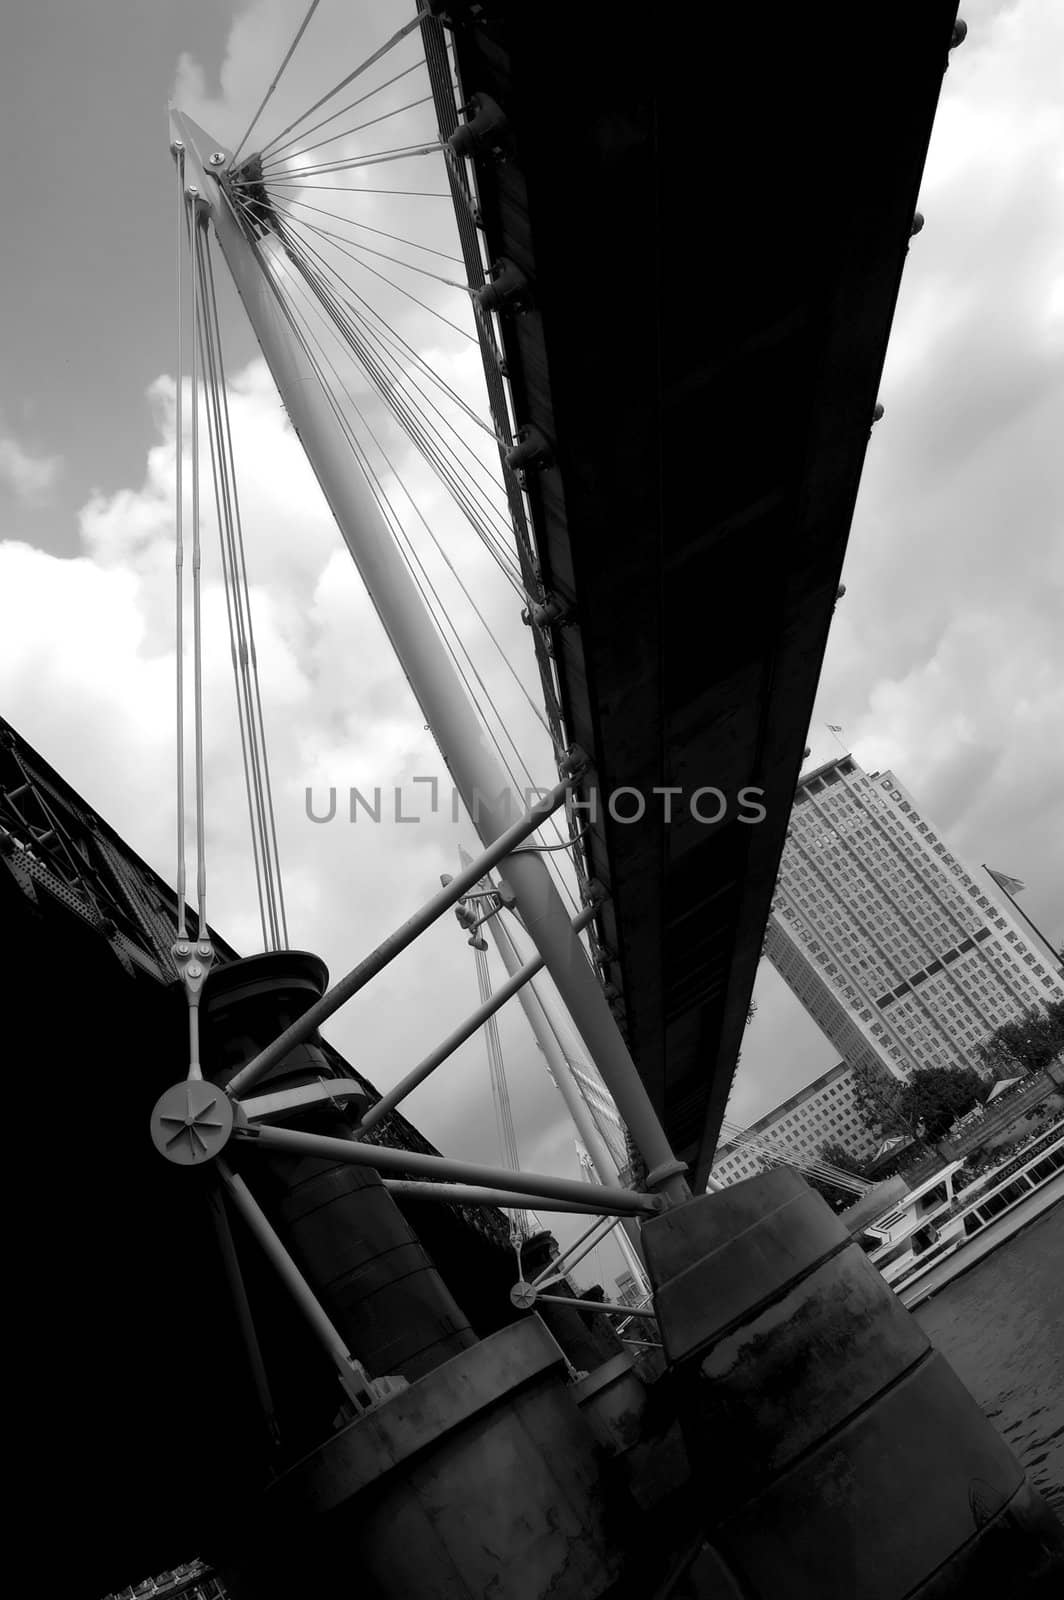 A London bridge